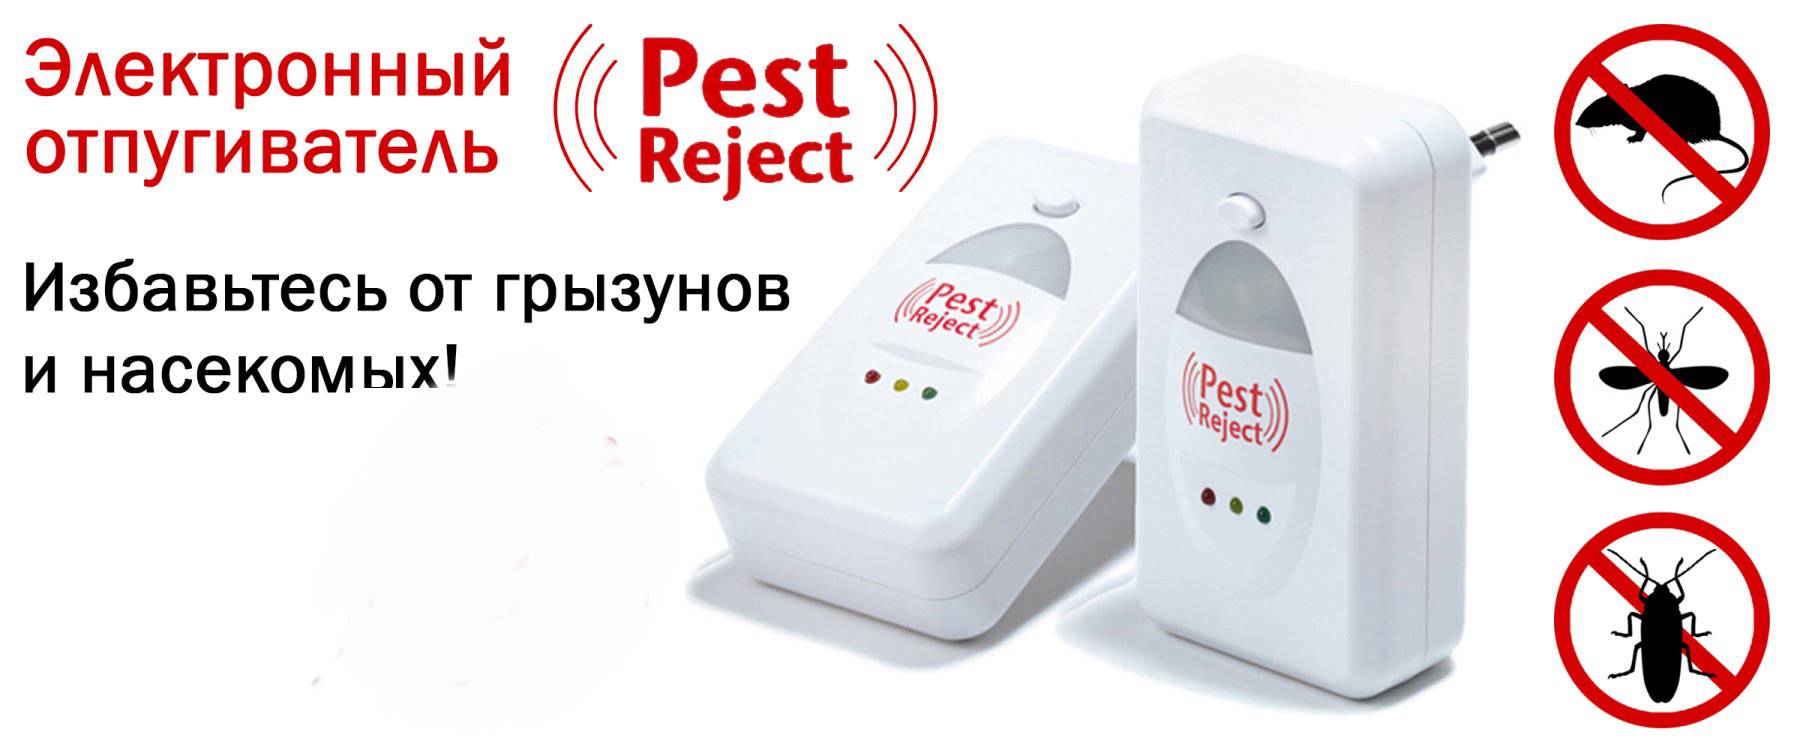 Ультразвуковой отпугиватель pest reject: инструкция по применению, преимущества и недостатки устройства